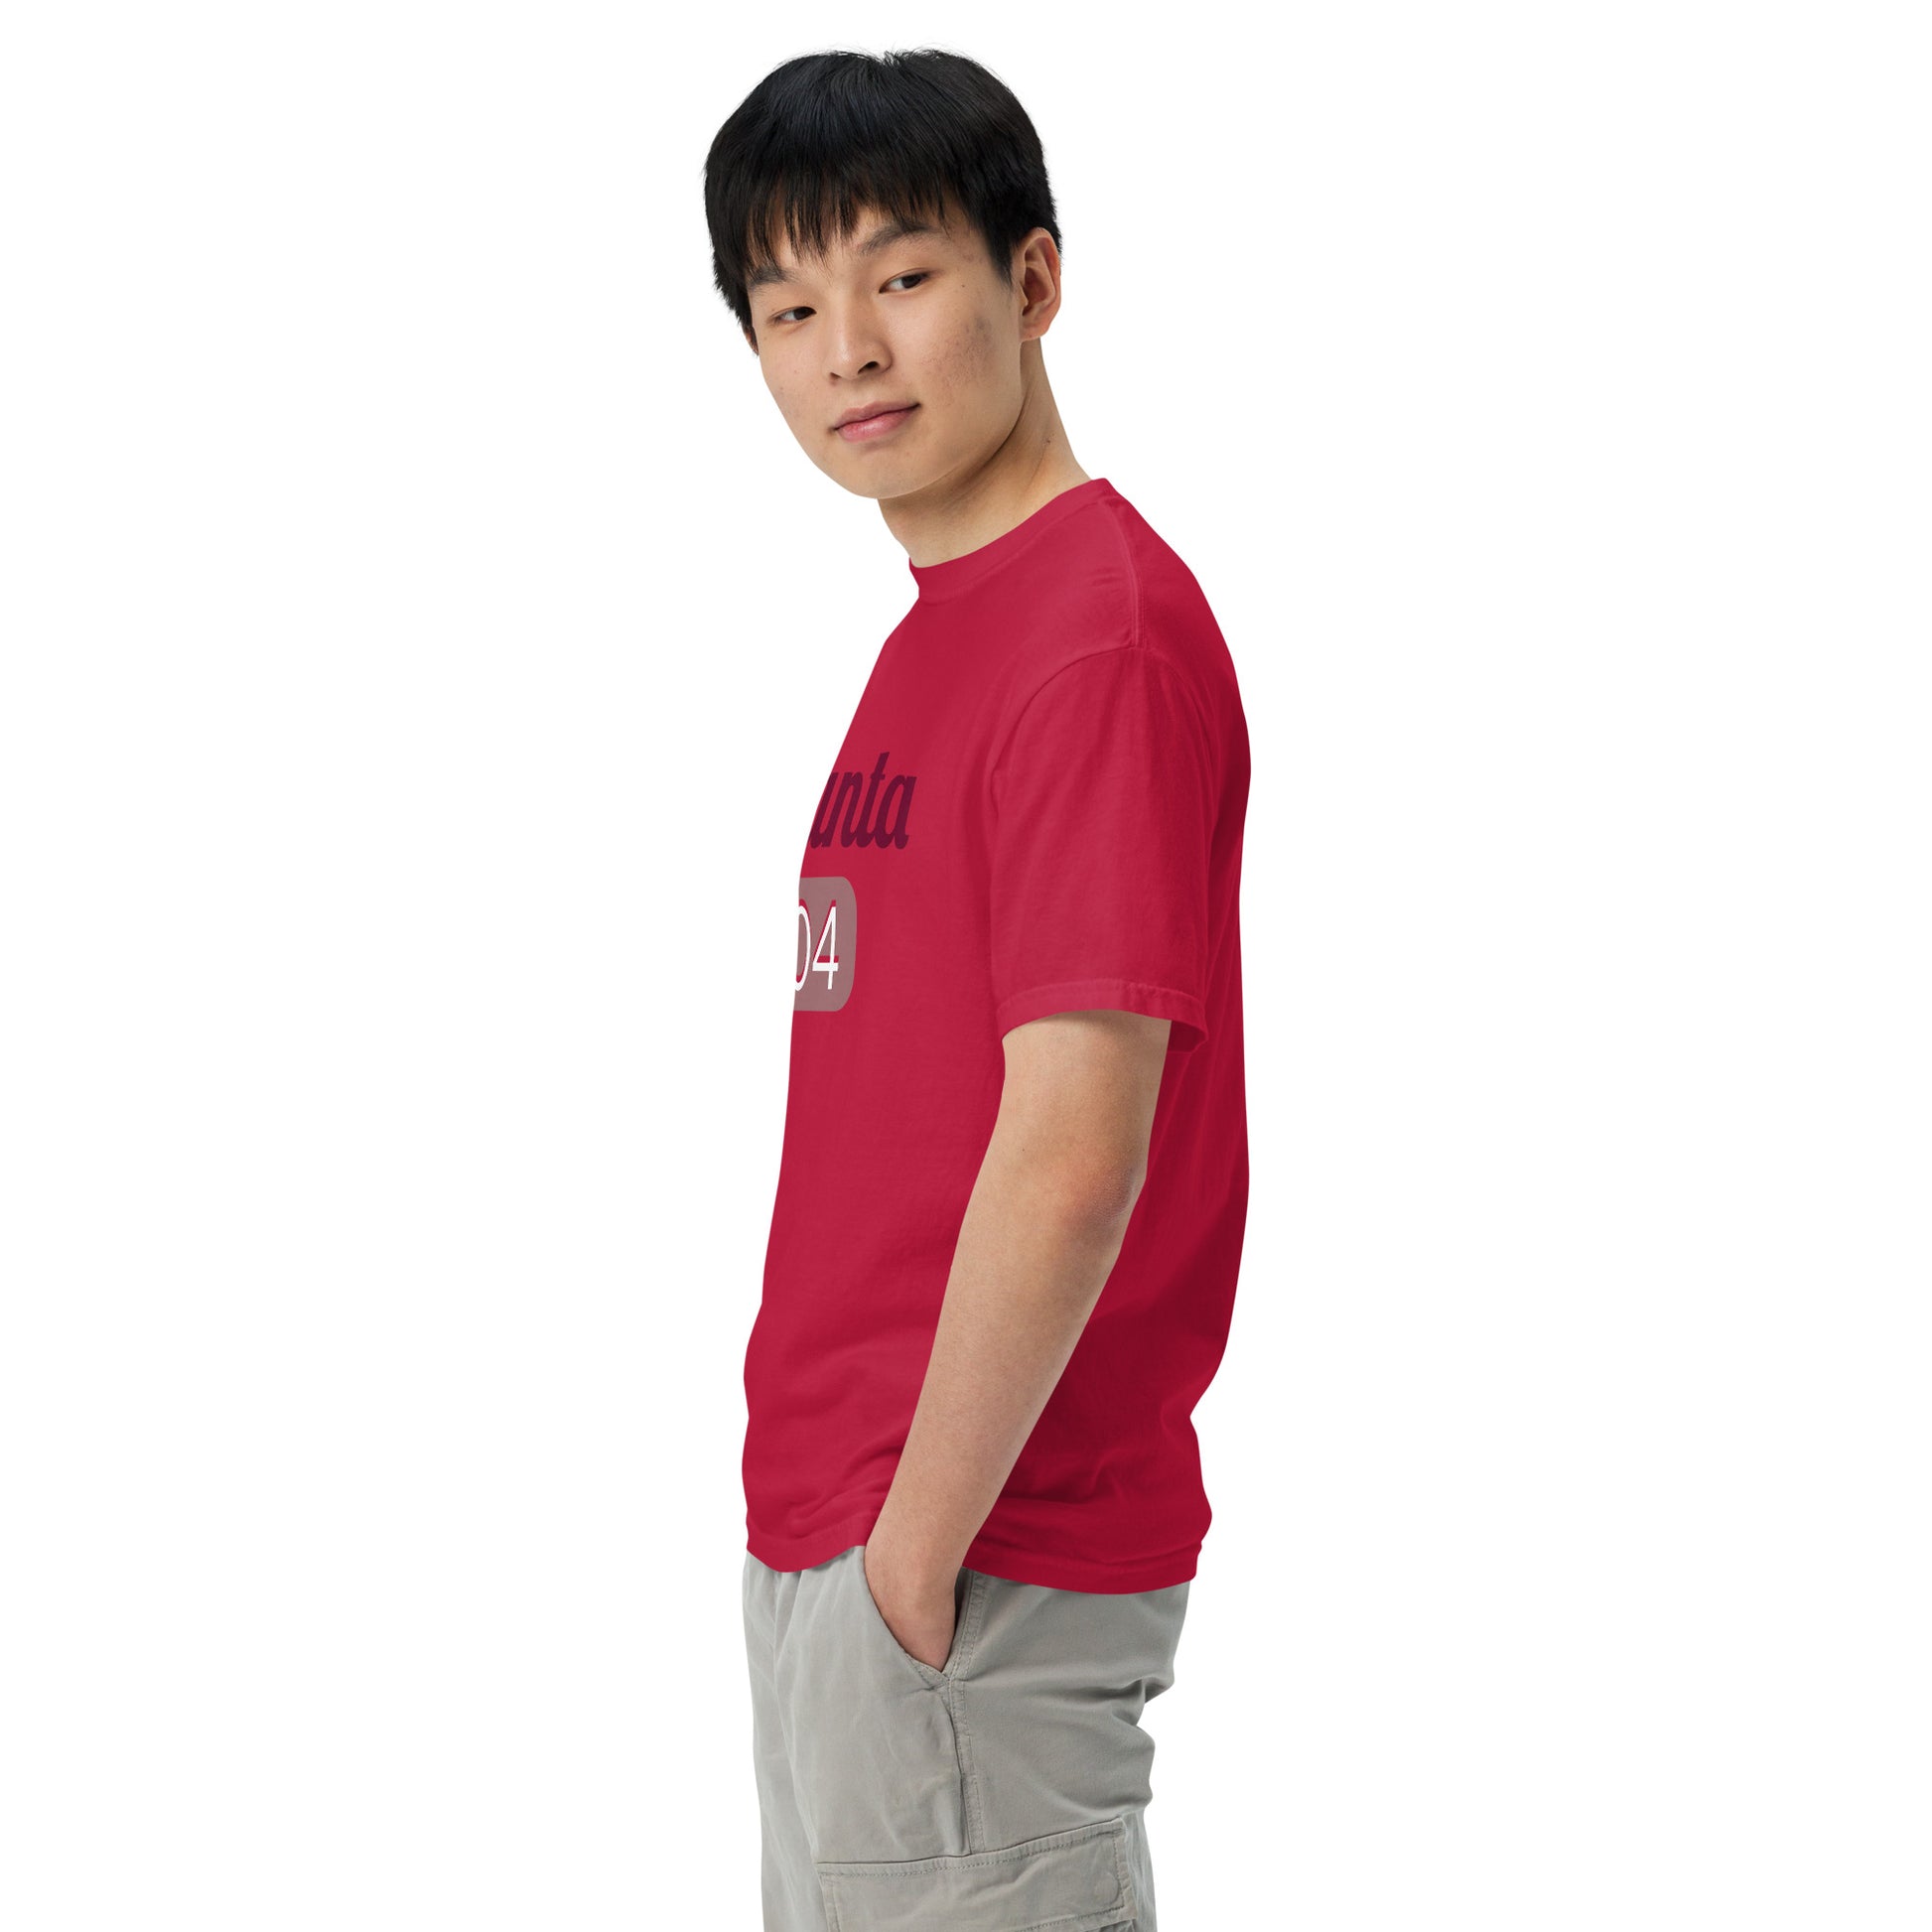 Atlanta 404 t-shirt in red